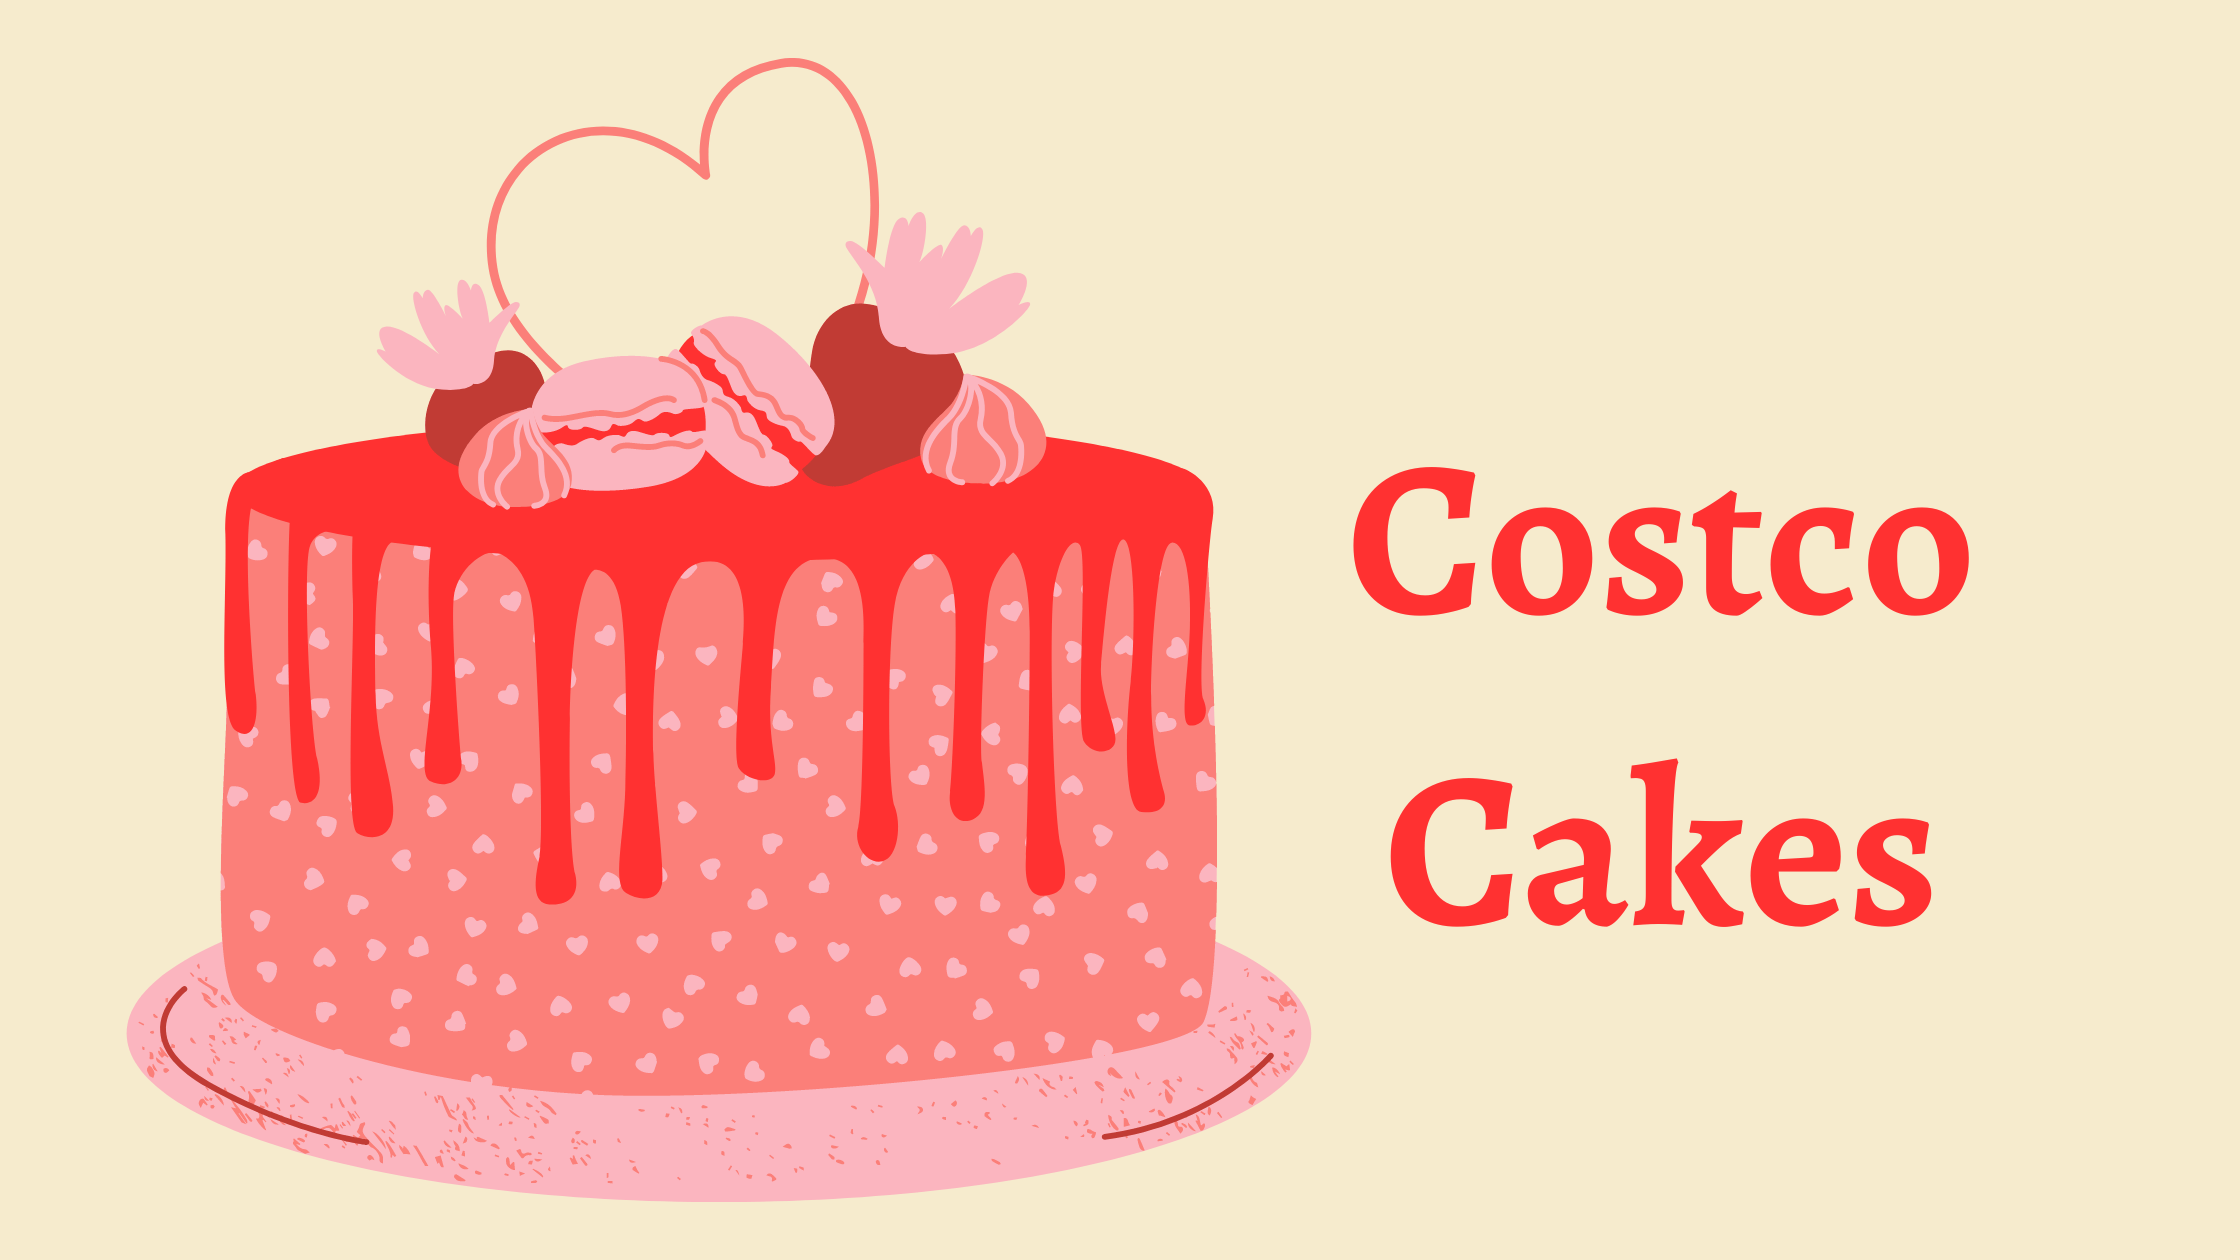 Costco Cakes